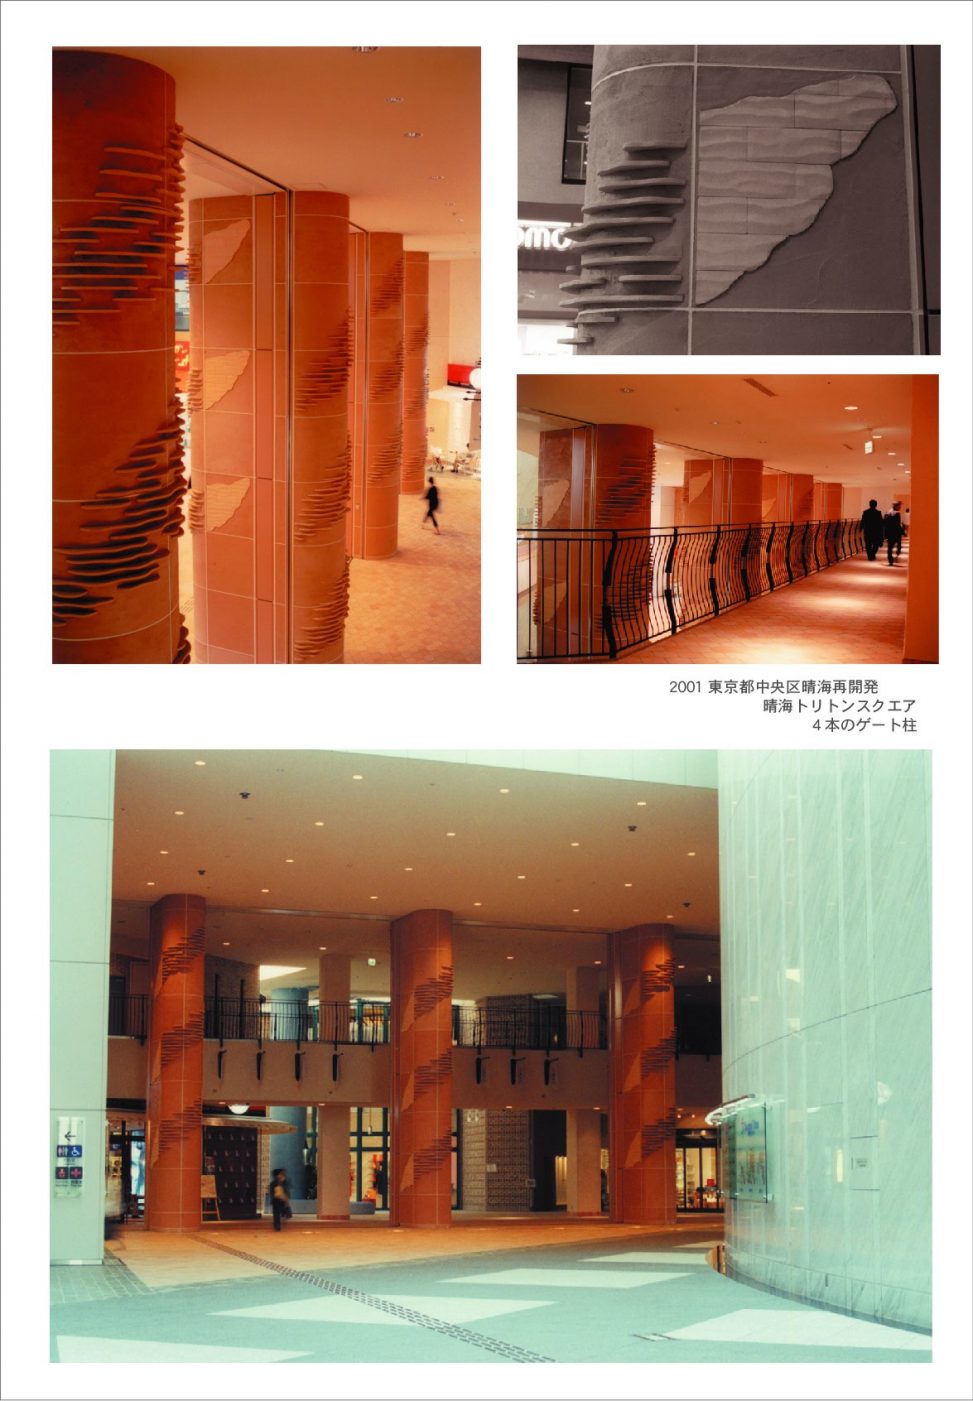 2001年 東京都中央区晴海再開発での晴海トリトンスクエアパブリックアート